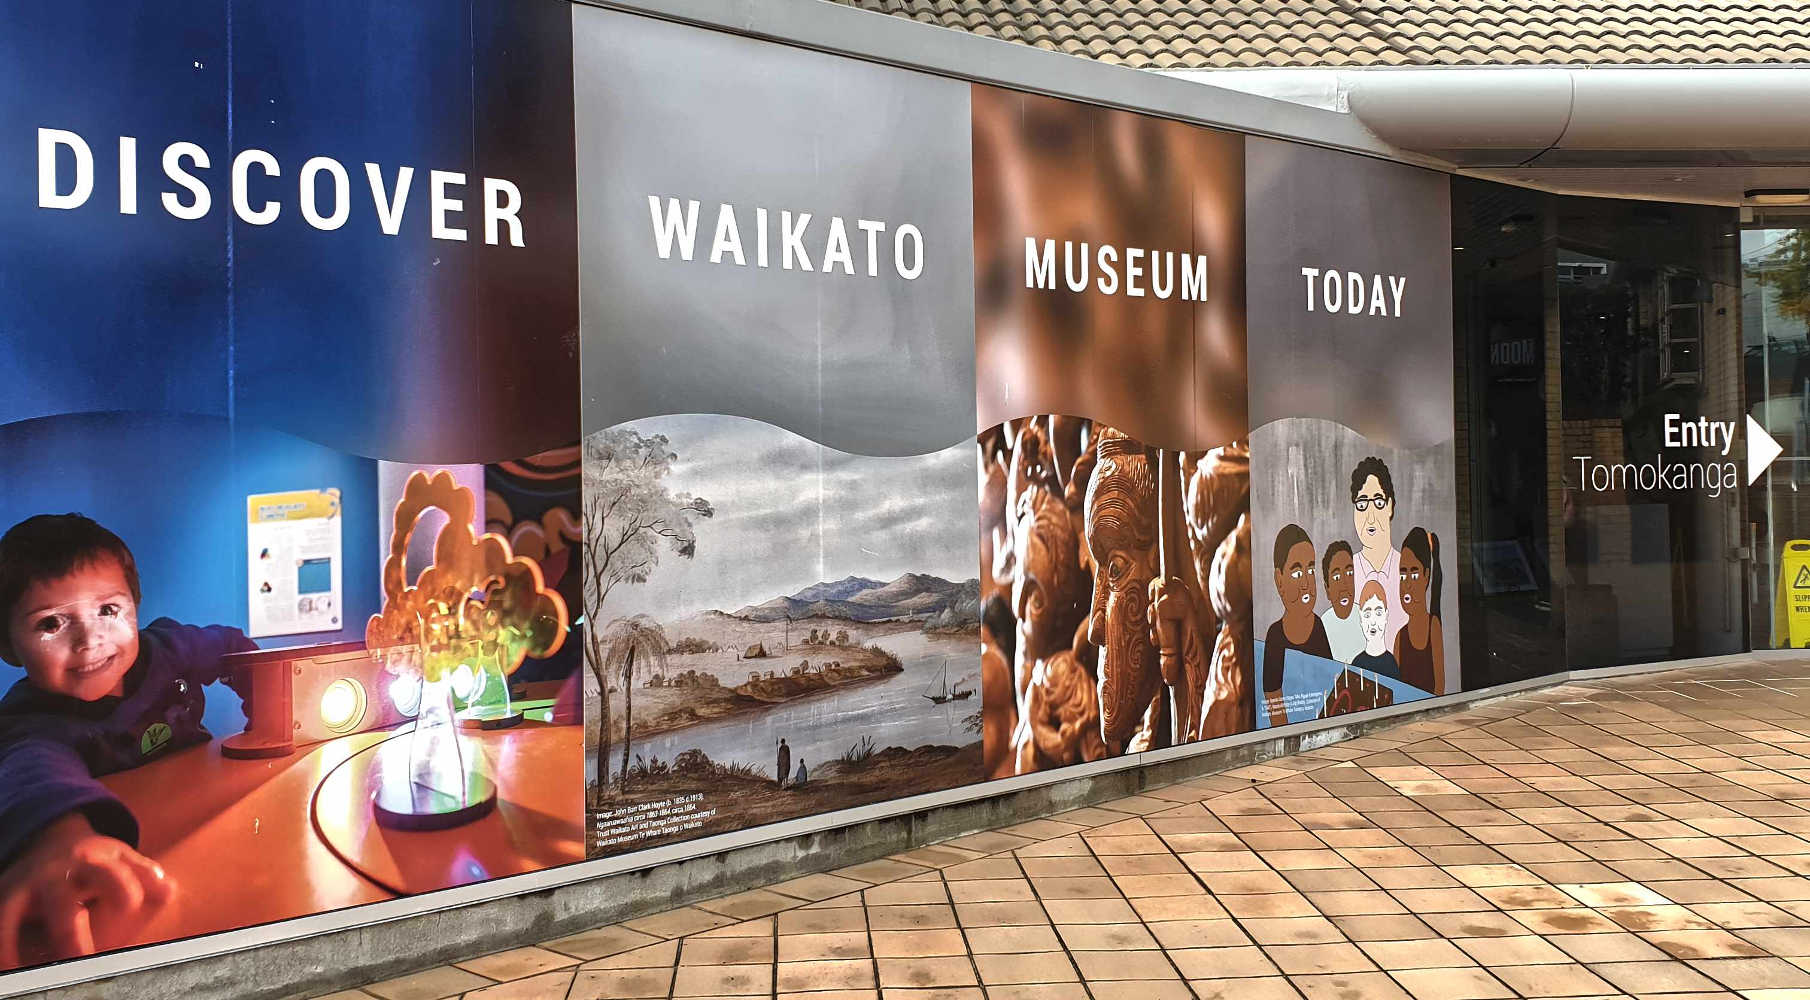 Waikato Museum entrance, Hamilton, New Zealand